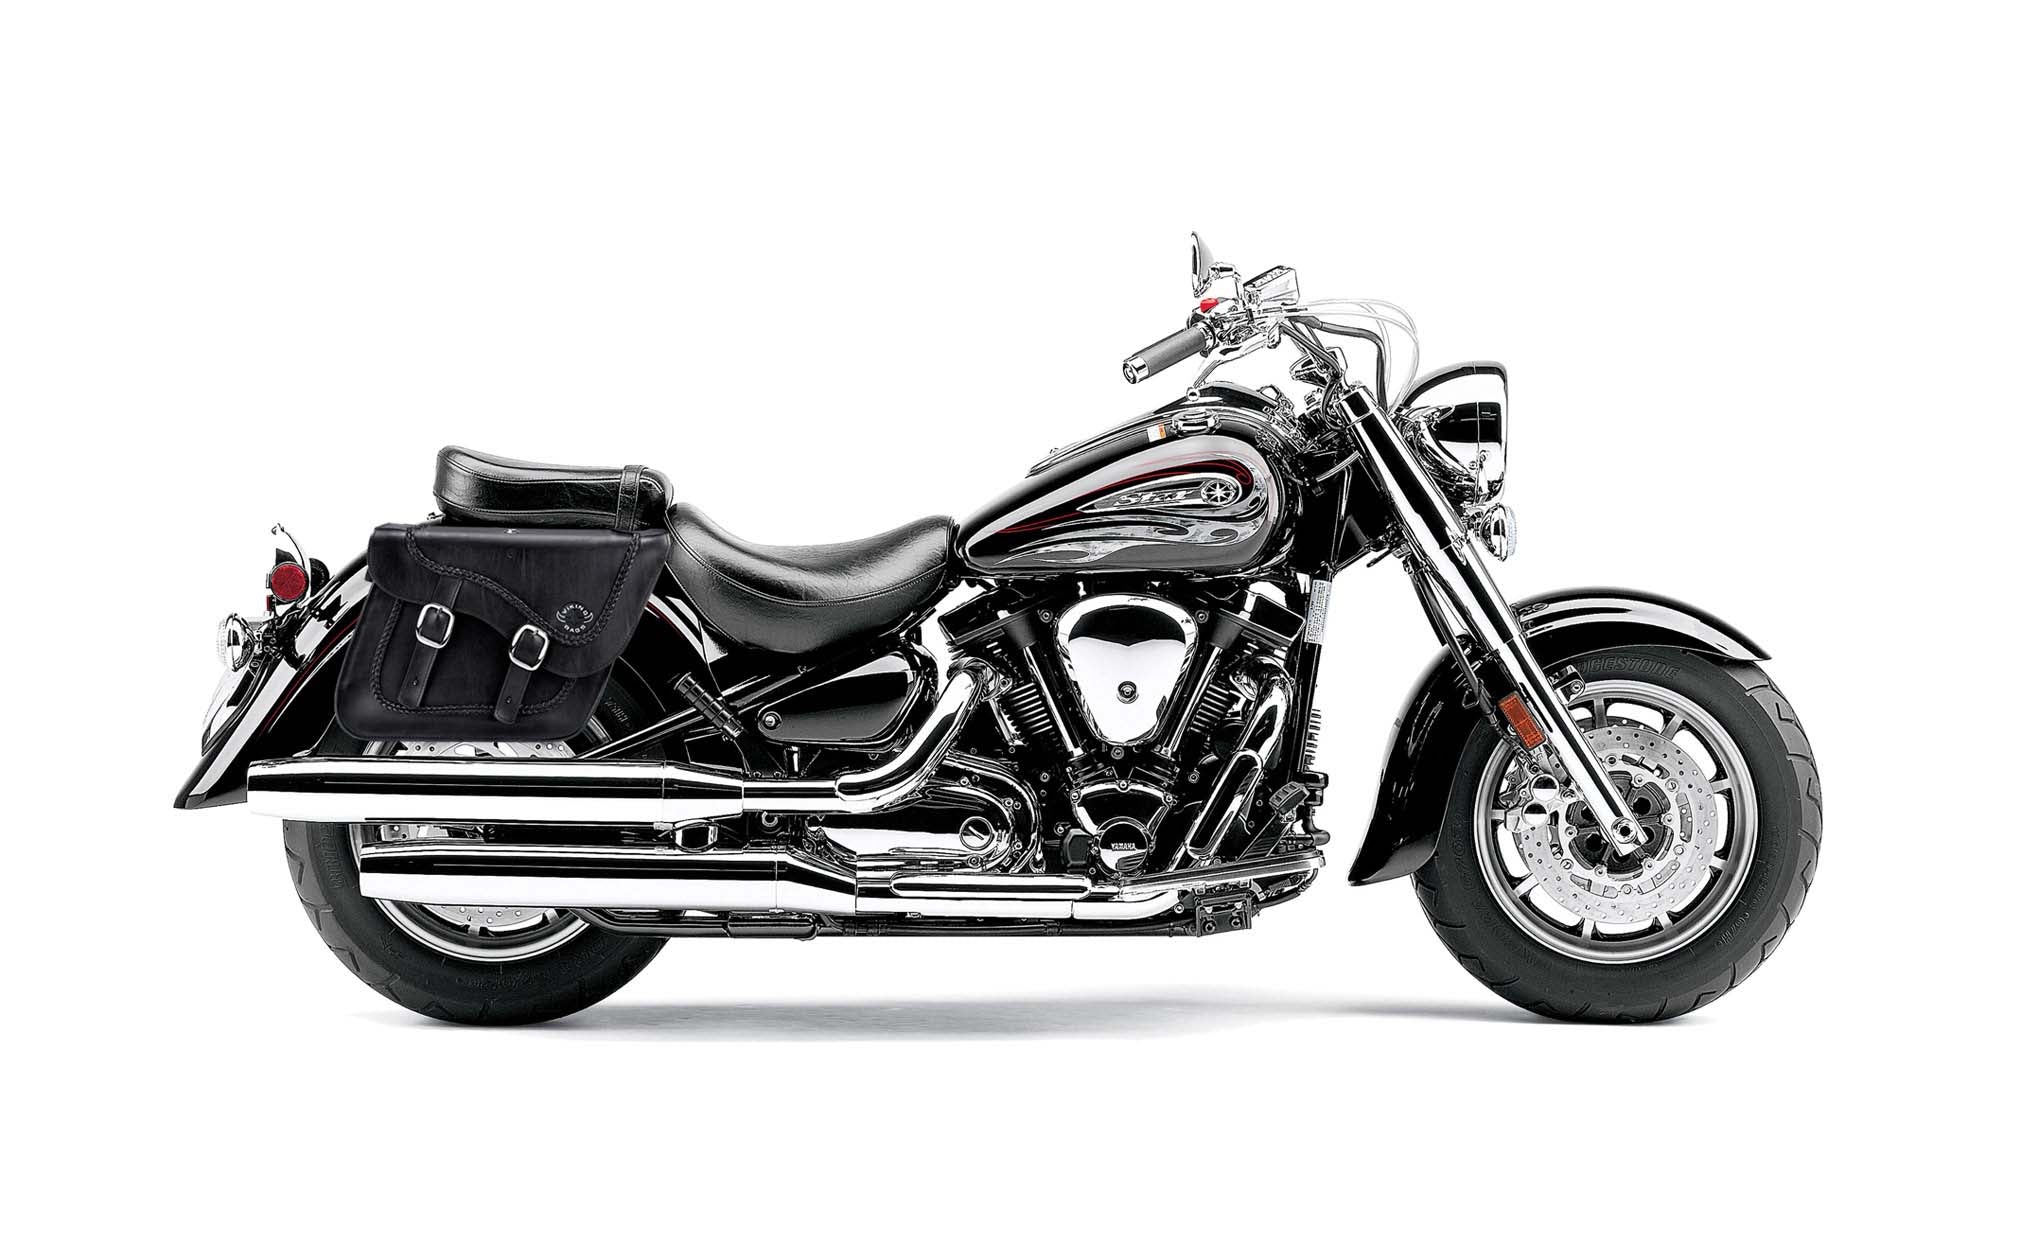 Viking Americano Yamaha Road Star S Midnight Braided Large Leather Motorcycle Saddlebags on Bike Photo @expand